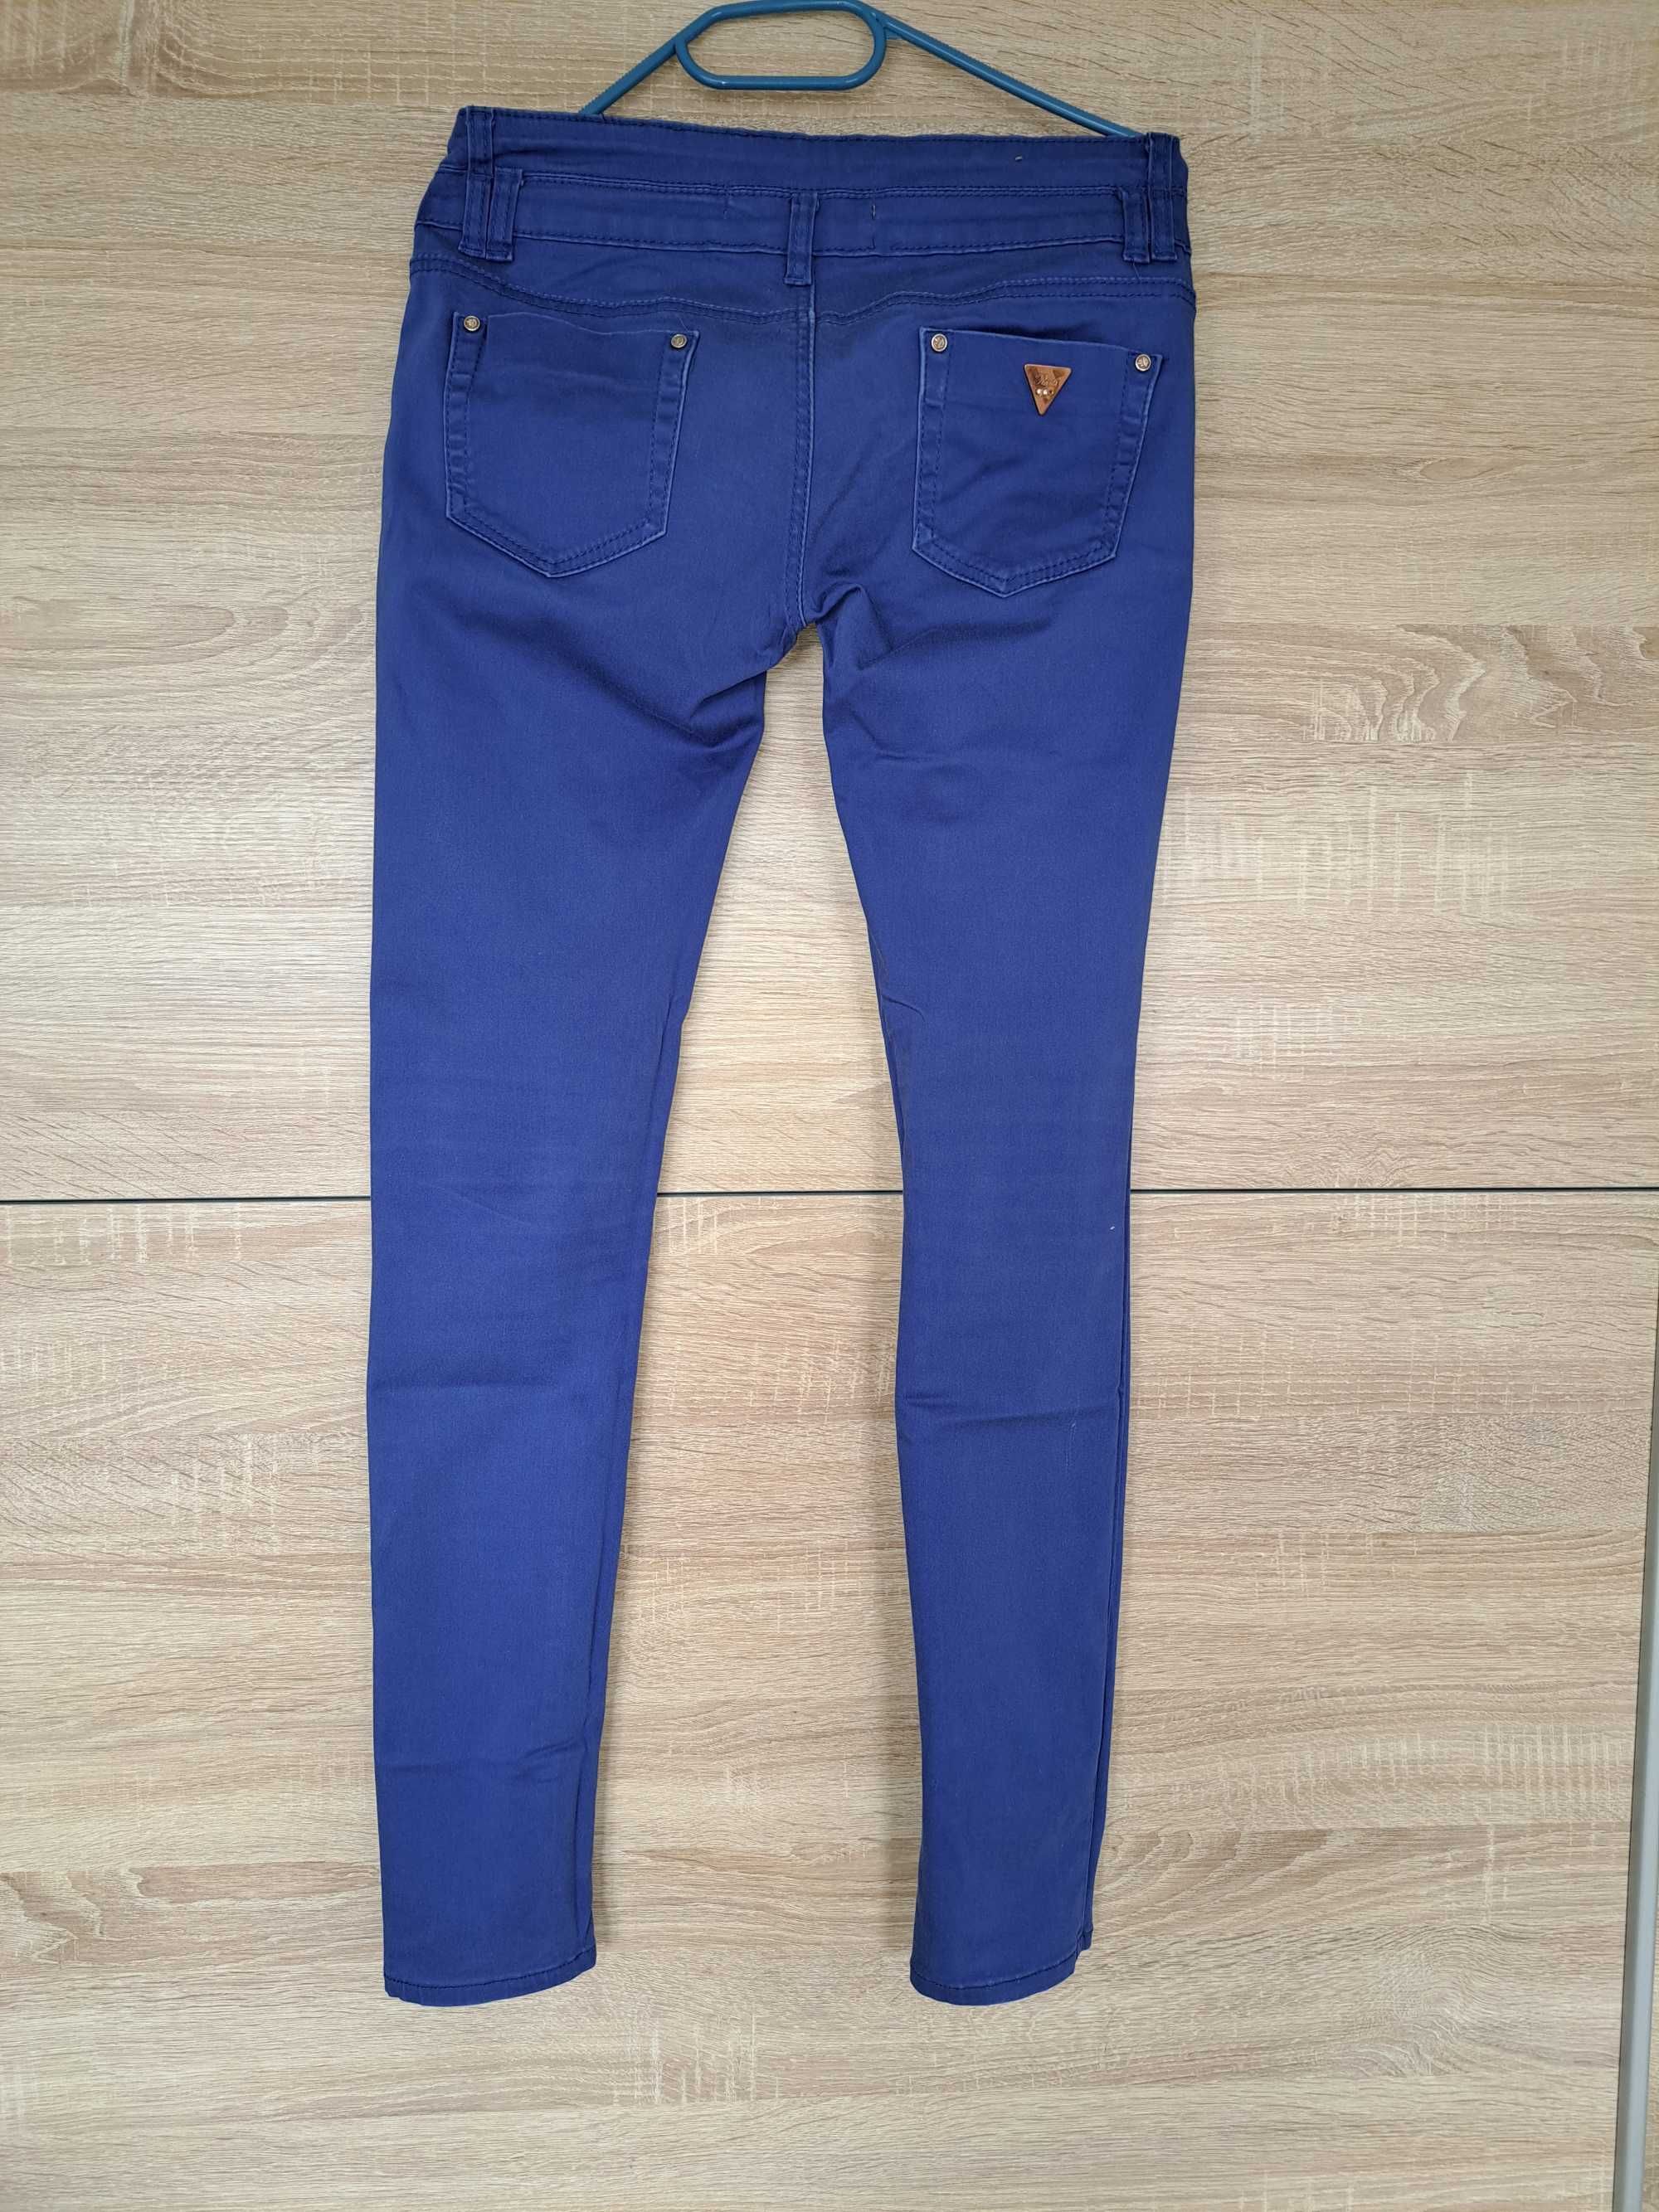 Spodnie damskie Real Jeans r. 40